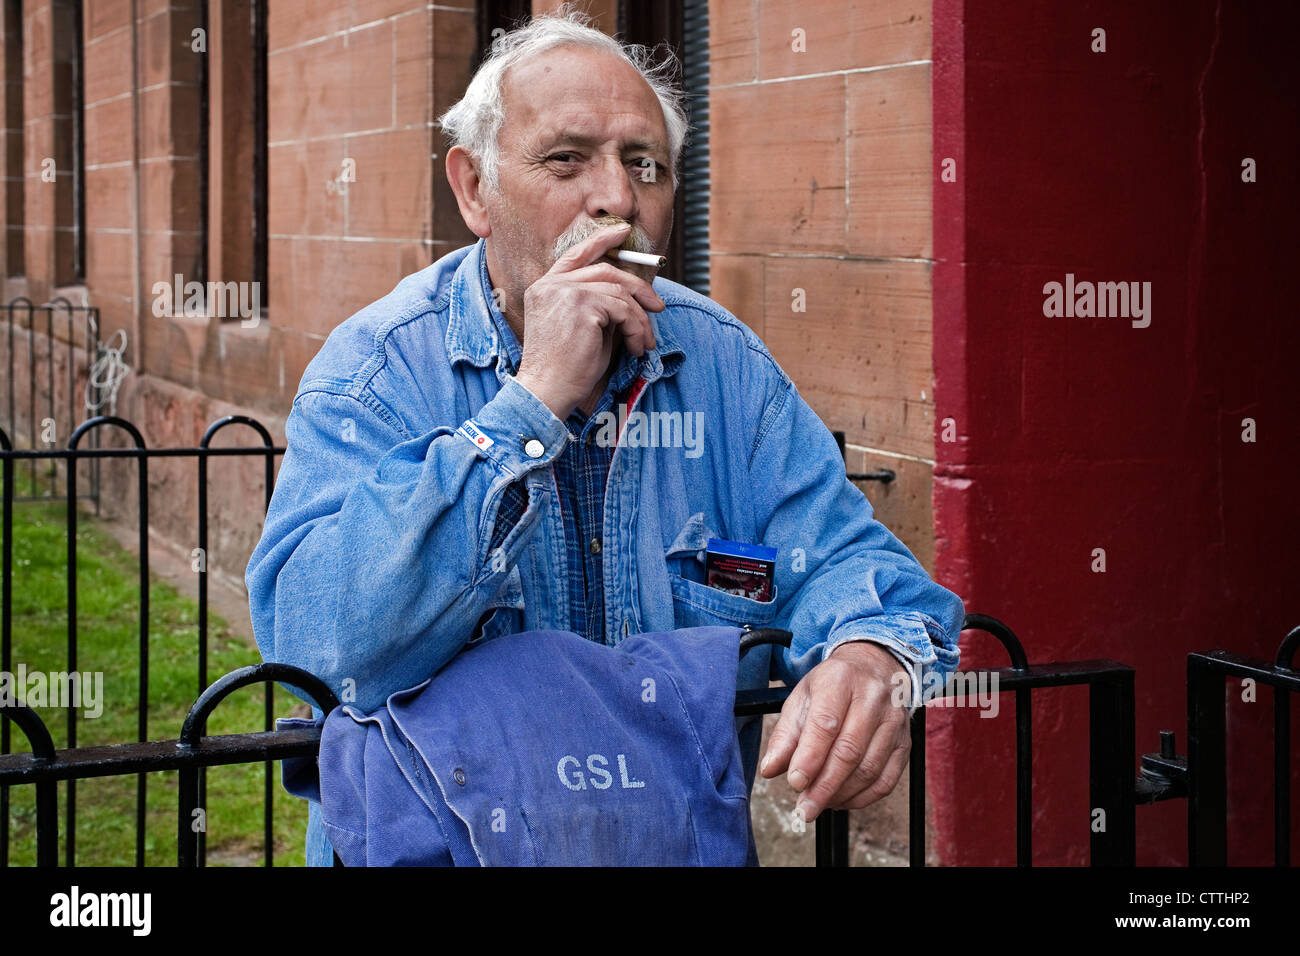 Robert Snell, pensionné, et résident d'Elder Street, Govan, Glasgow se tient en dehors de son immeuble de la région de Govan, Glasgow Banque D'Images